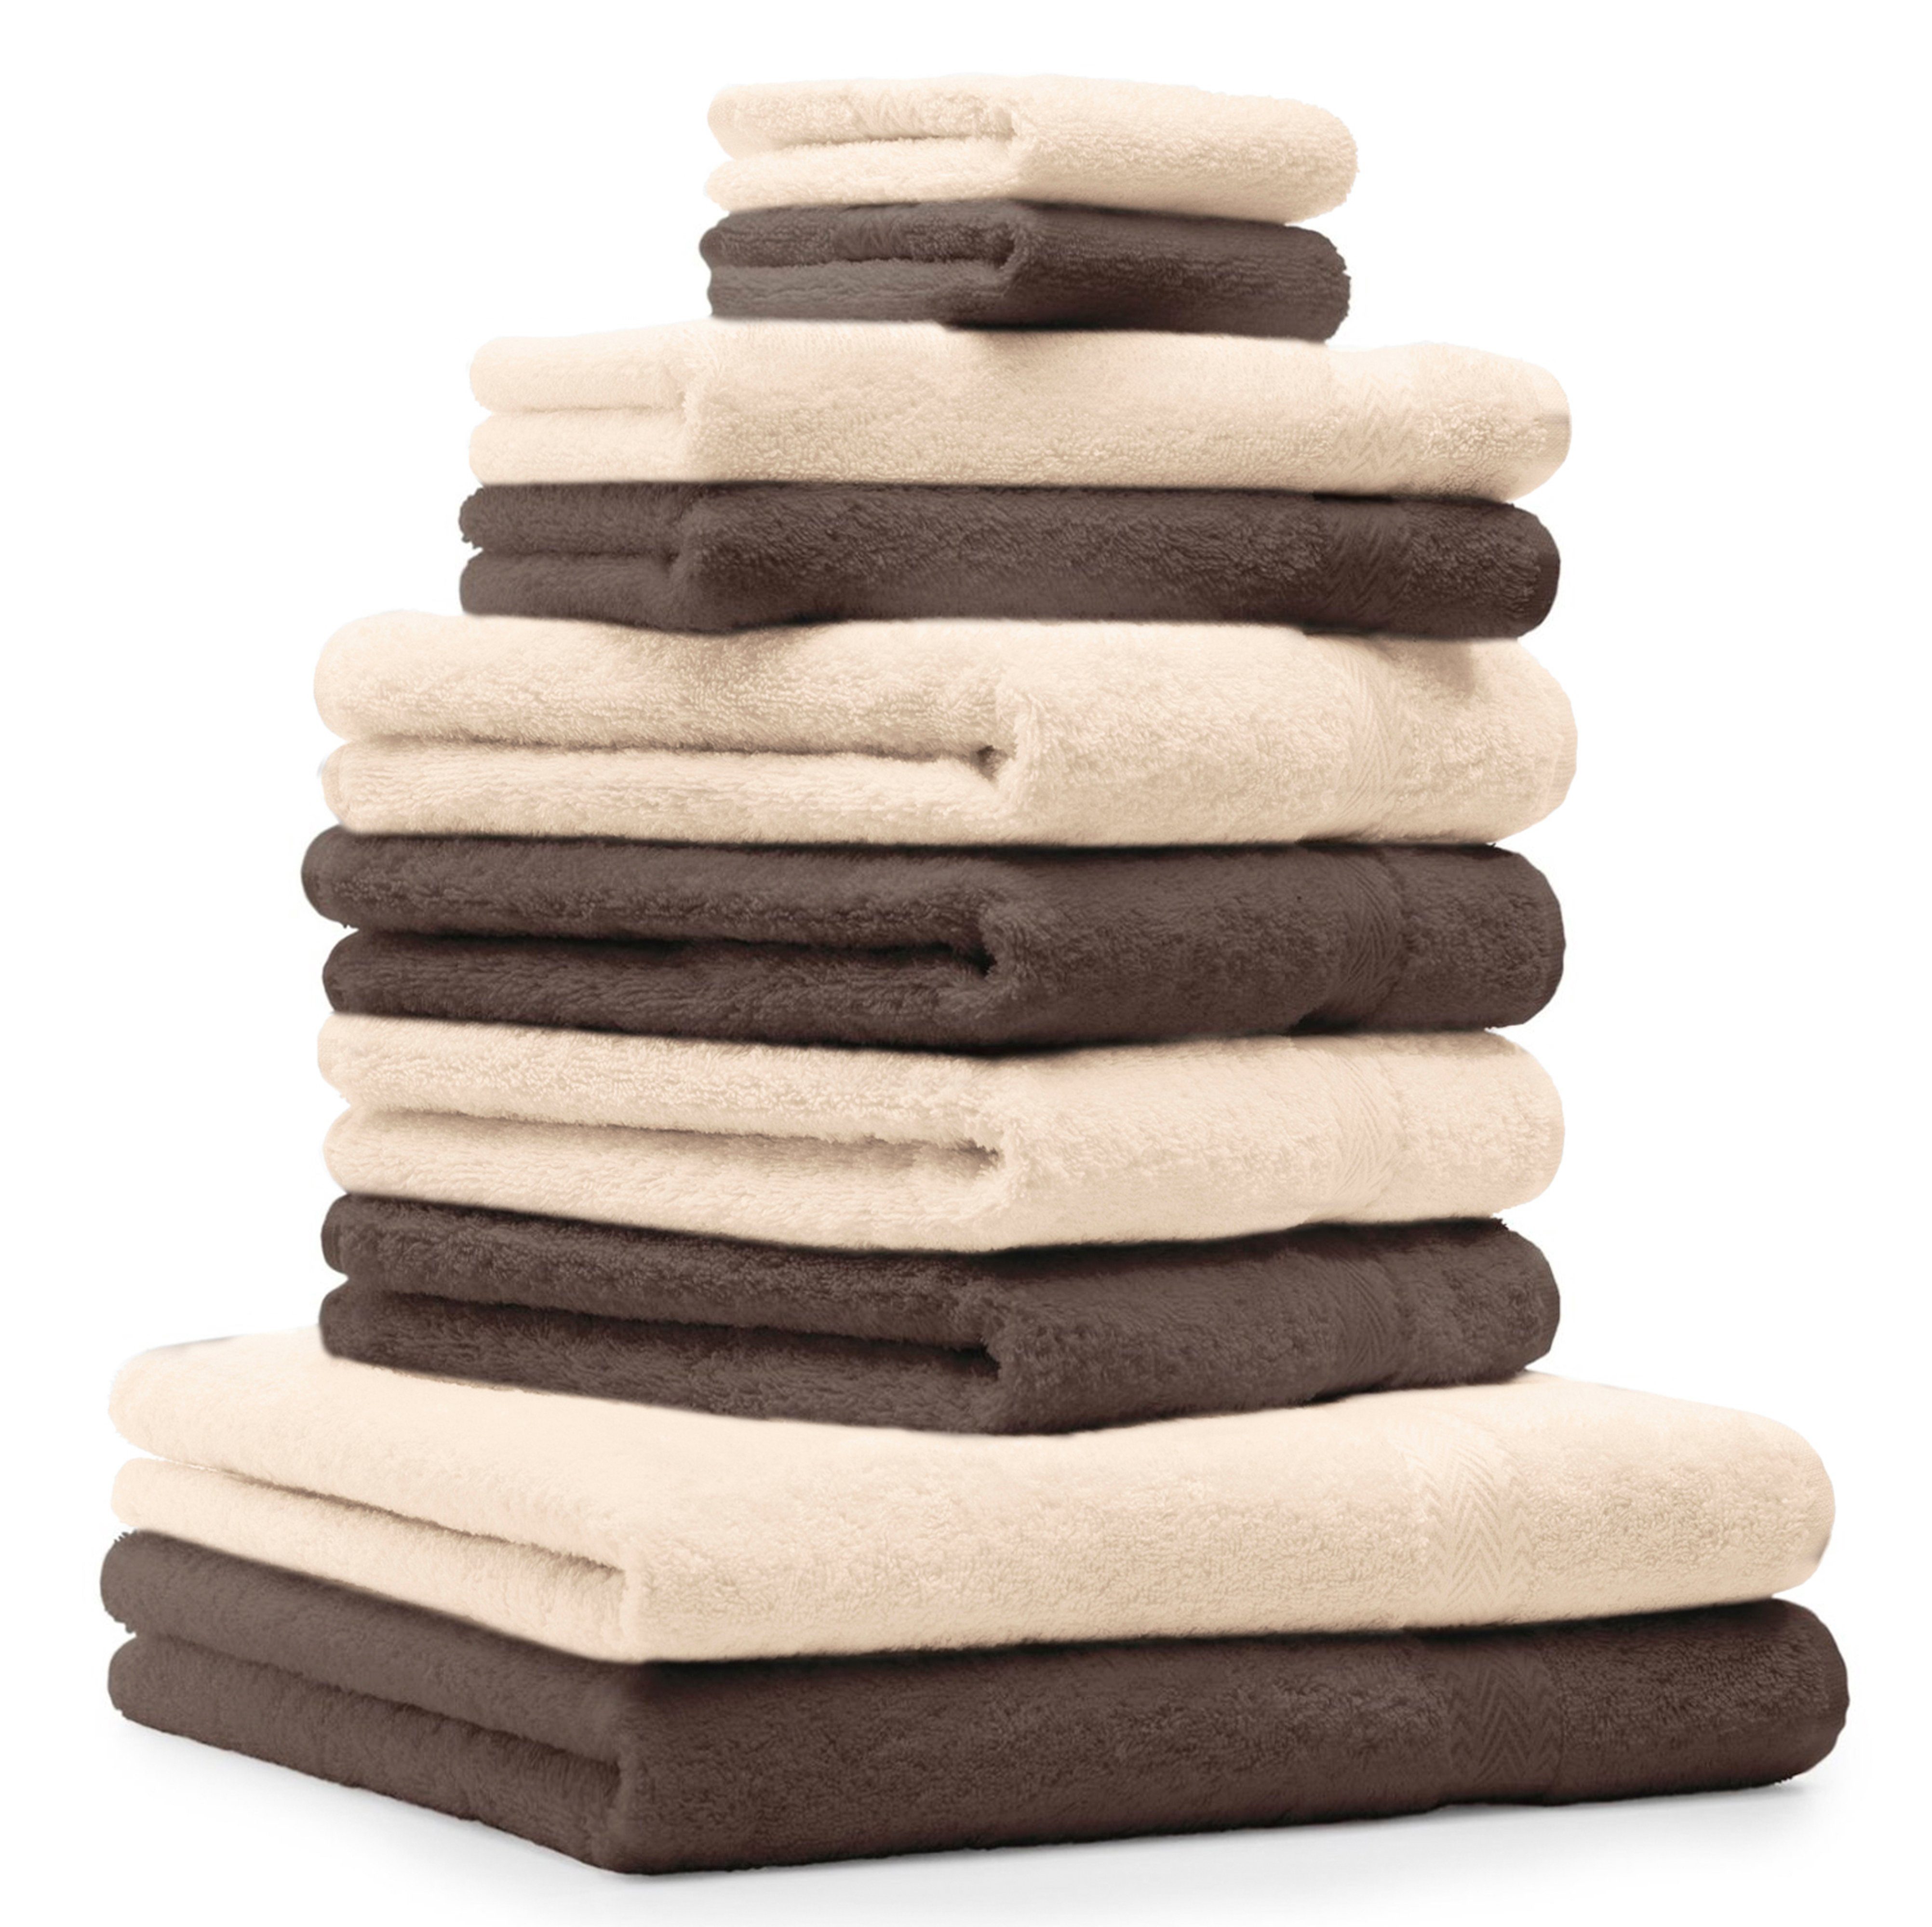 Betz Handtuch Set 10-TLG. Handtuch-Set Baumwolle Classic nussbraun und Farbe beige, 100